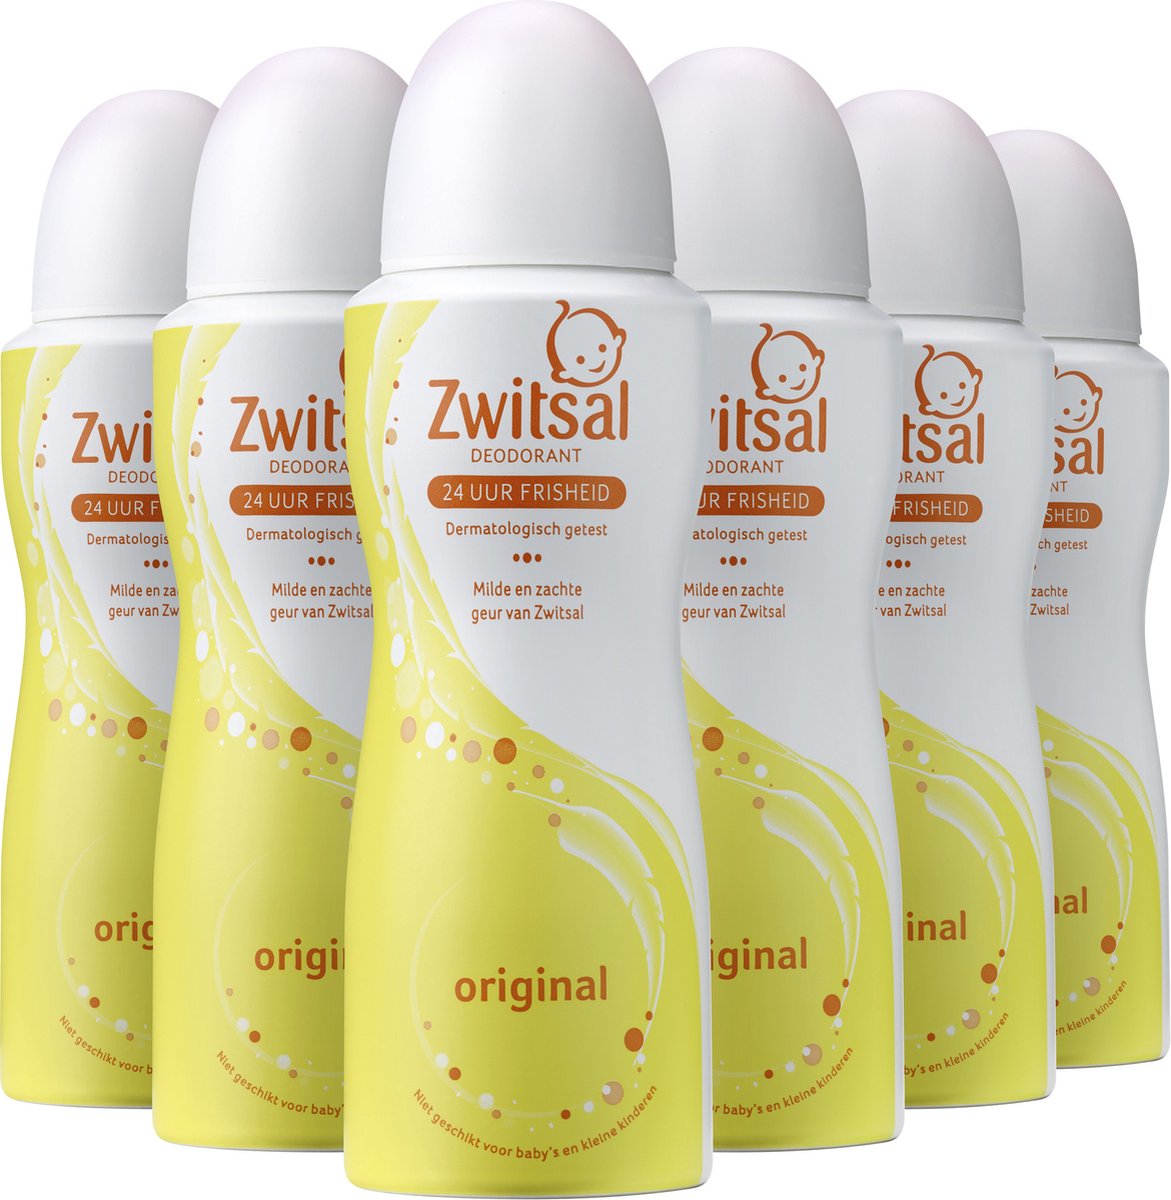 Zwitsal Original Deodorant - 6 x 100 ml - Voordeelverpakking - Zwitsal